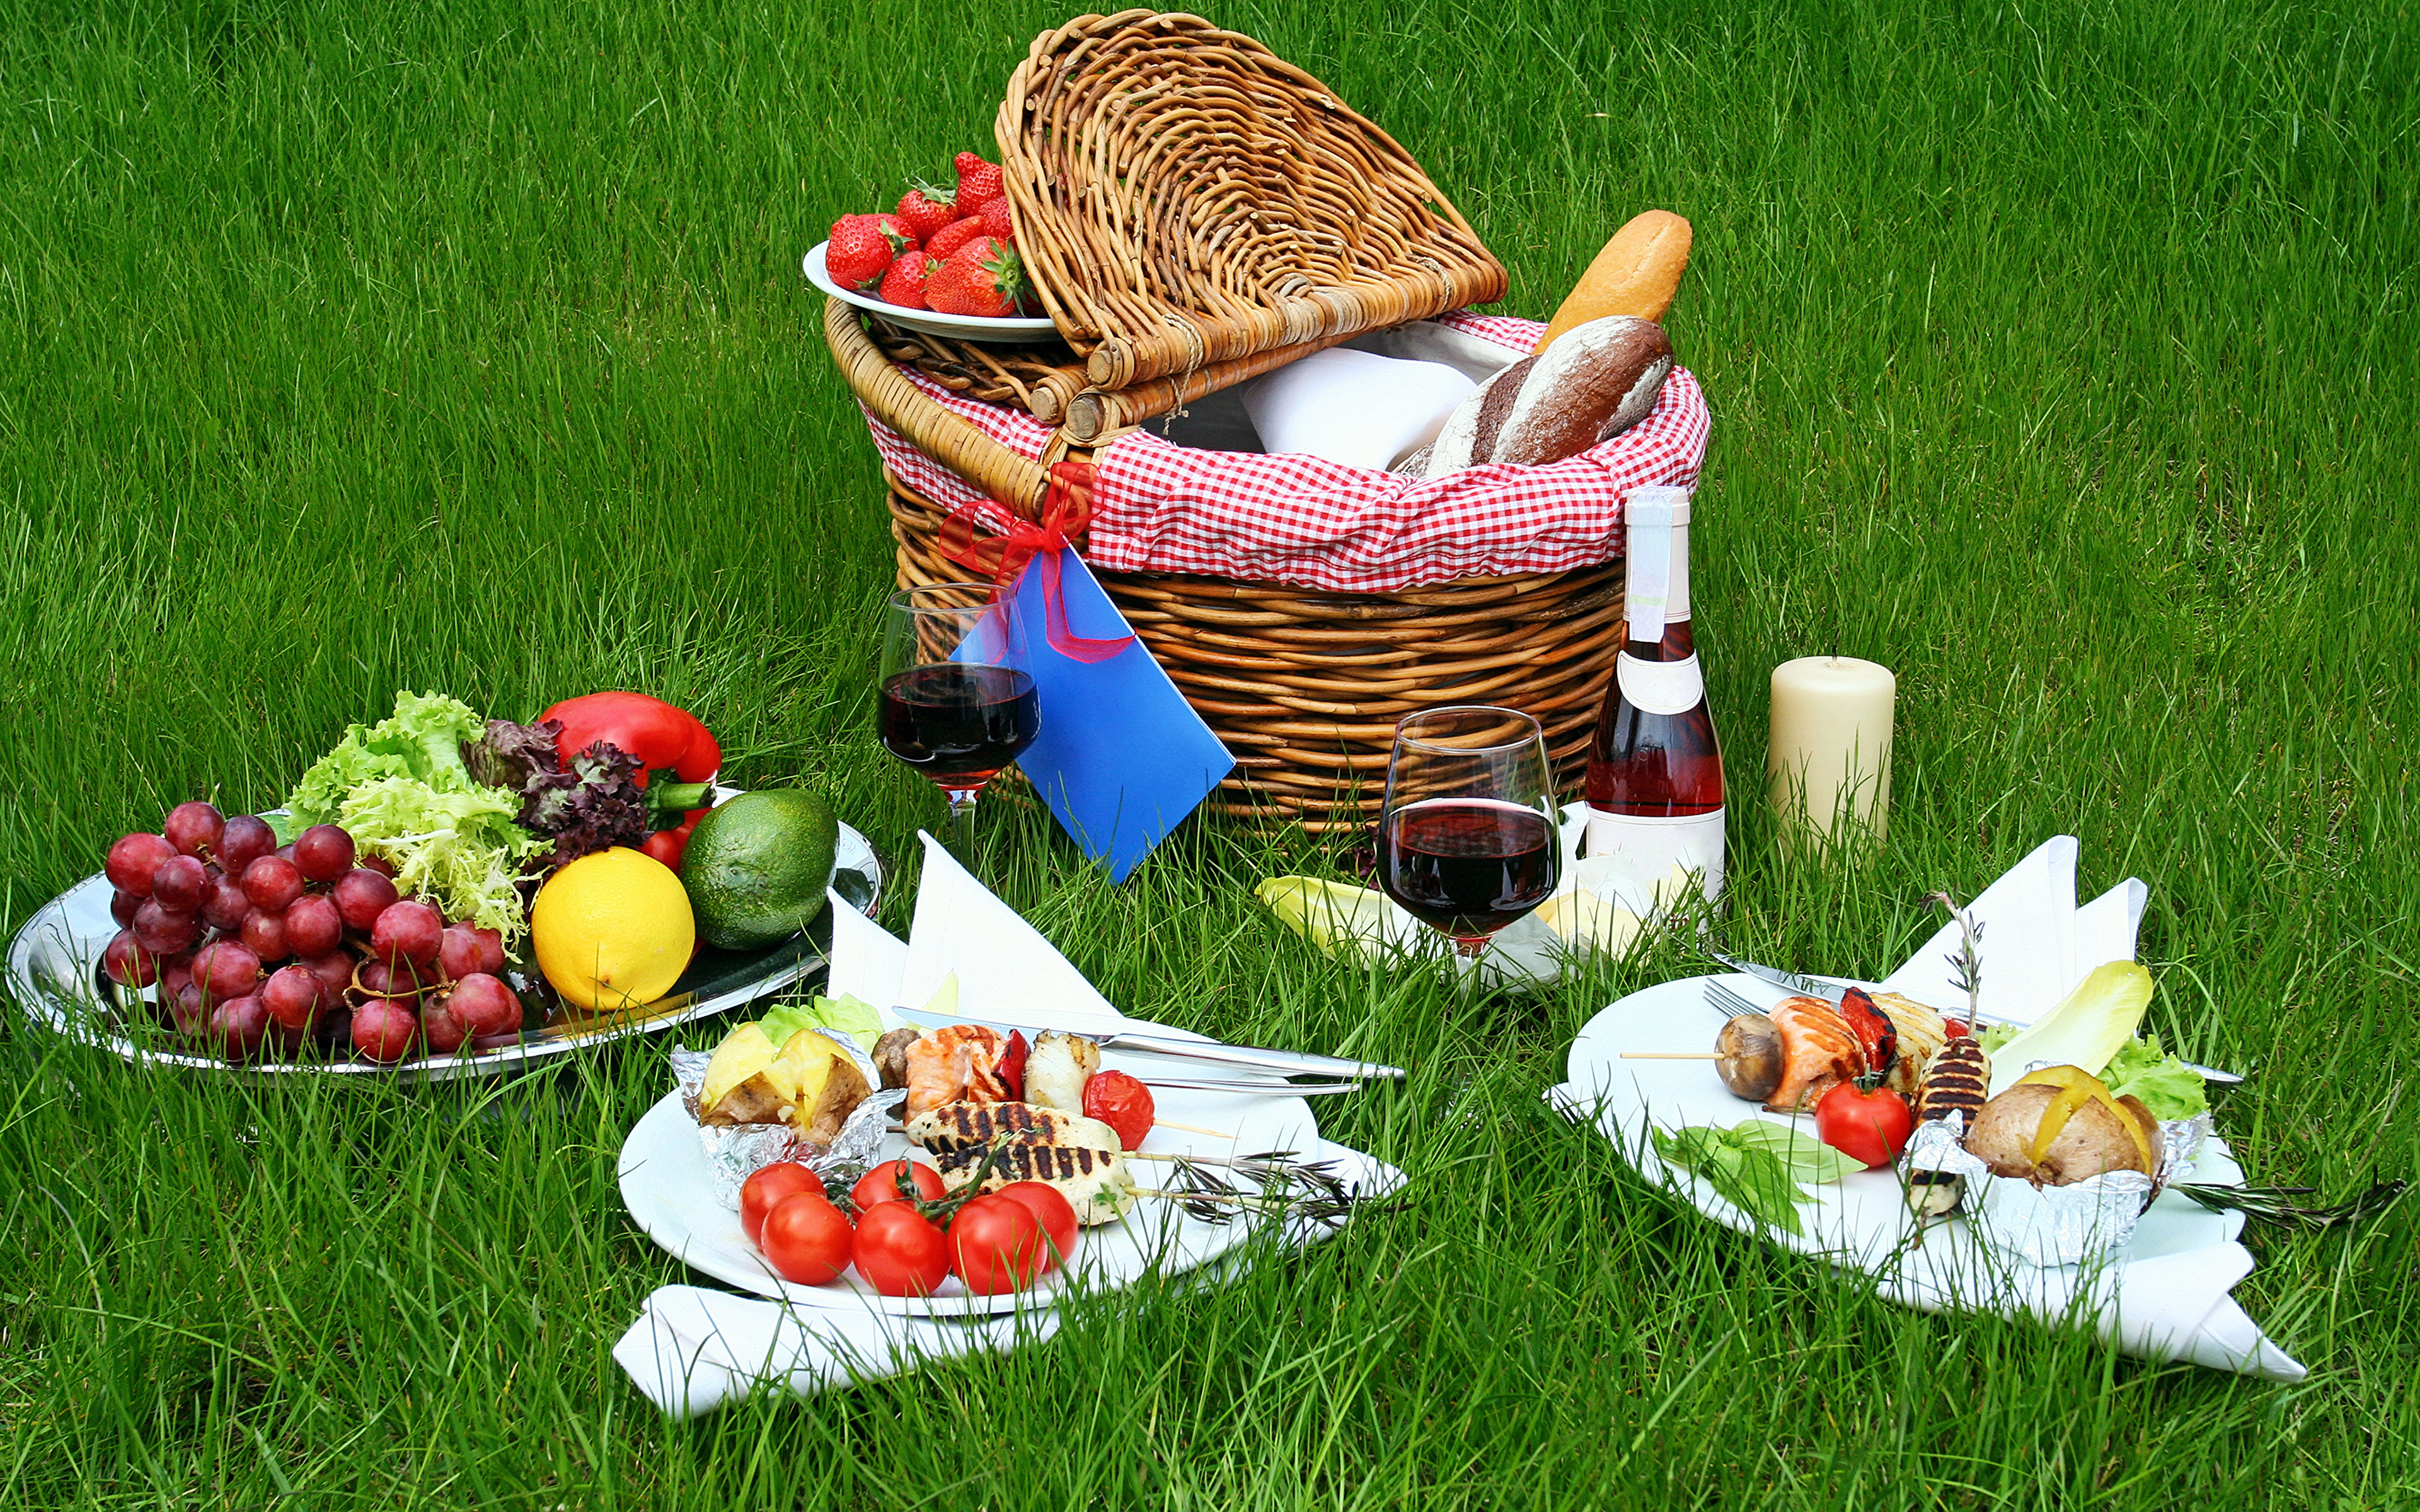 Авито пикнике. Пикник с фруктами. Пикник с фруктами на природе. На природе на пикник с фруктами и овощами. Пикниковая корзина с овощами и фруктами.